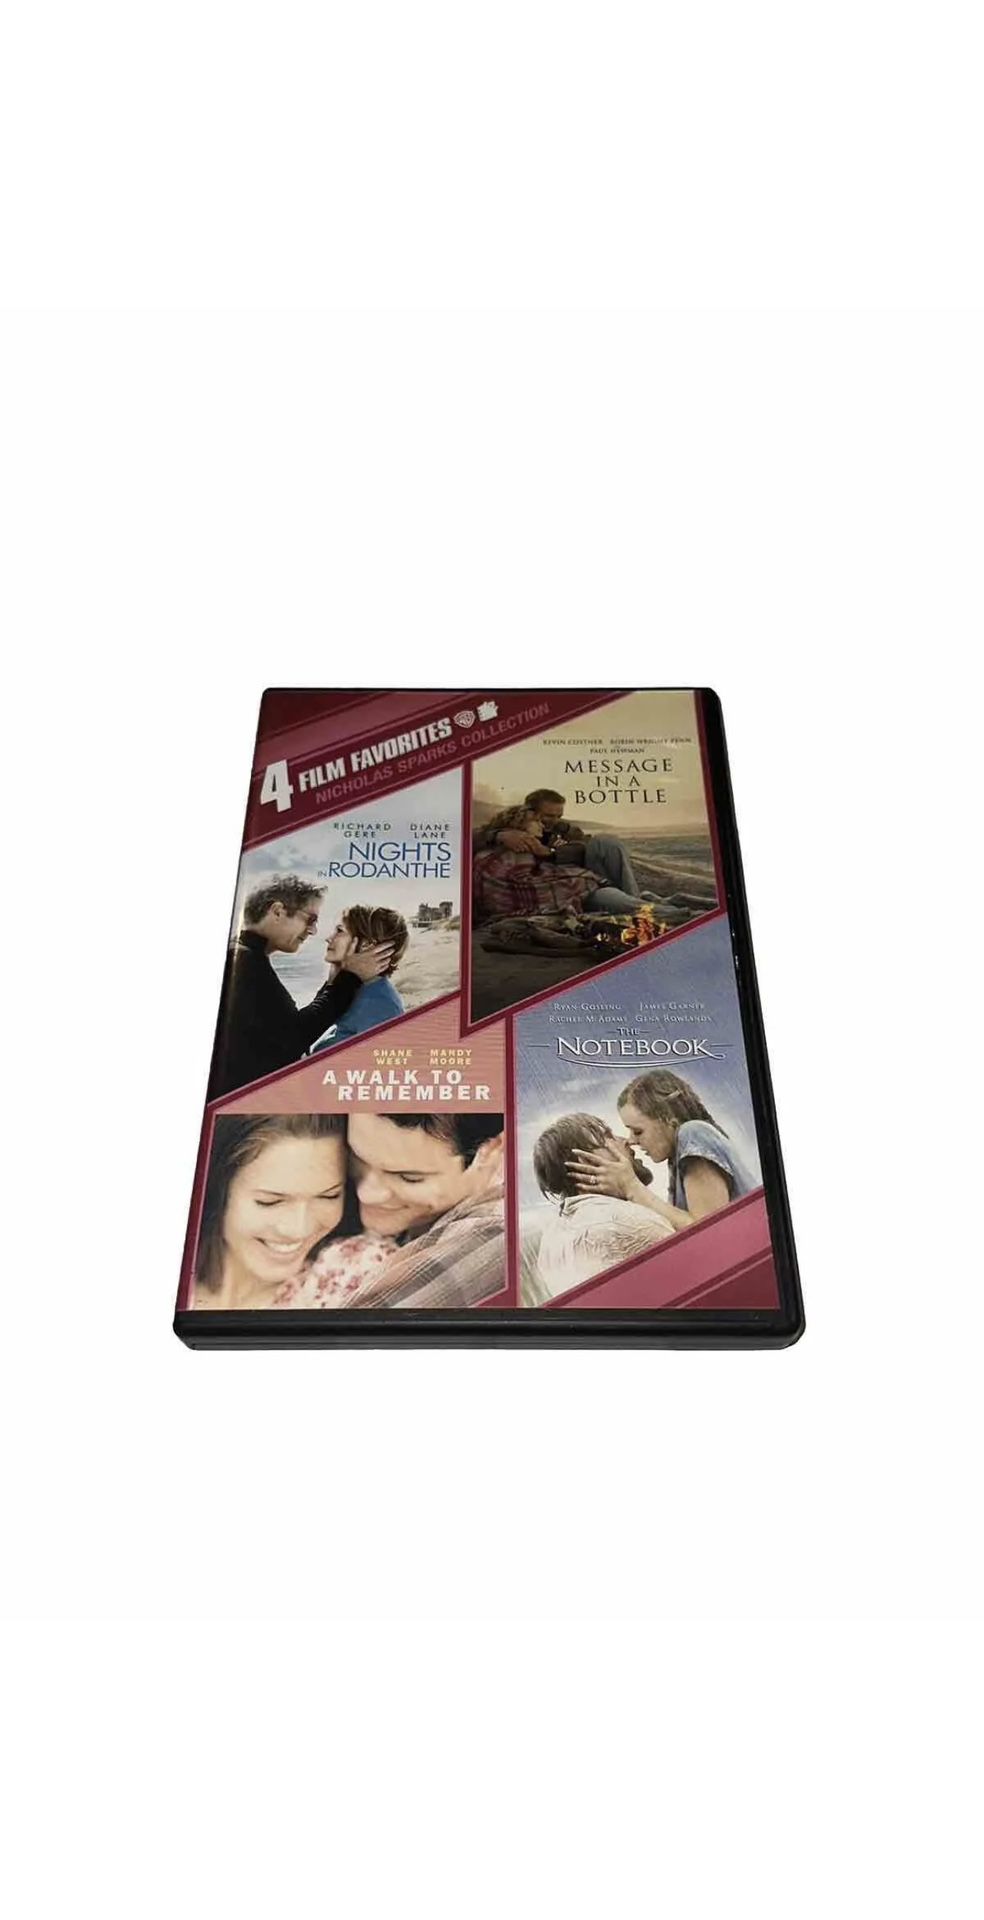 4 Film Favorites: Nicholas Sparks Collection (DVD) Amazing Romantic Films